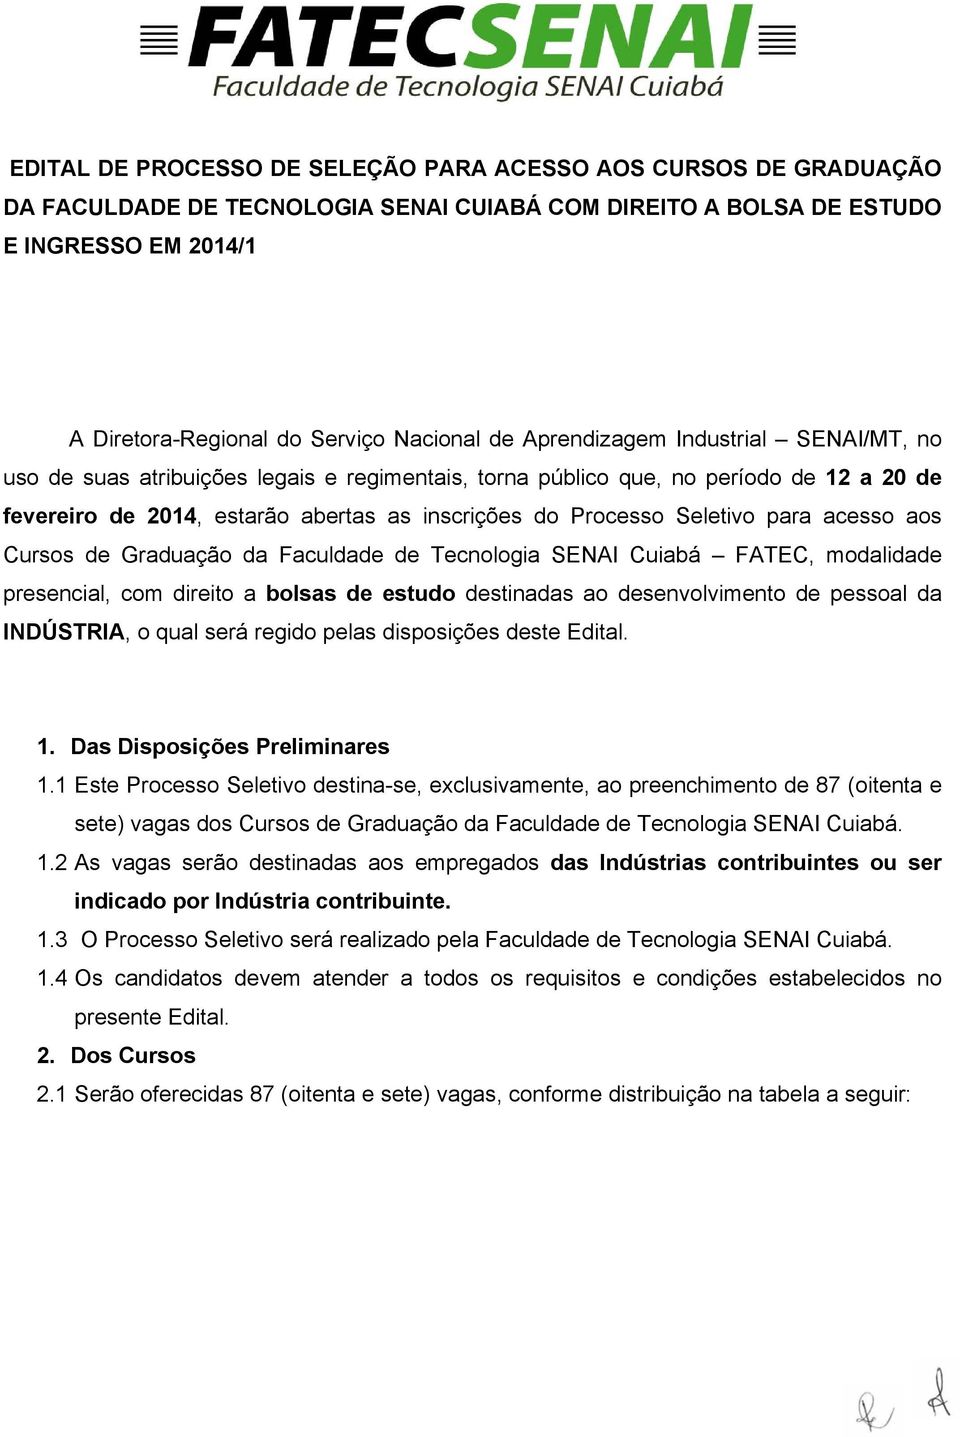 para acesso aos Cursos de Graduação da Faculdade de Tecnologia SENAI Cuiabá FATEC, modalidade presencial, com direito a bolsas de estudo destinadas ao desenvolvimento de pessoal da INDÚSTRIA, o qual